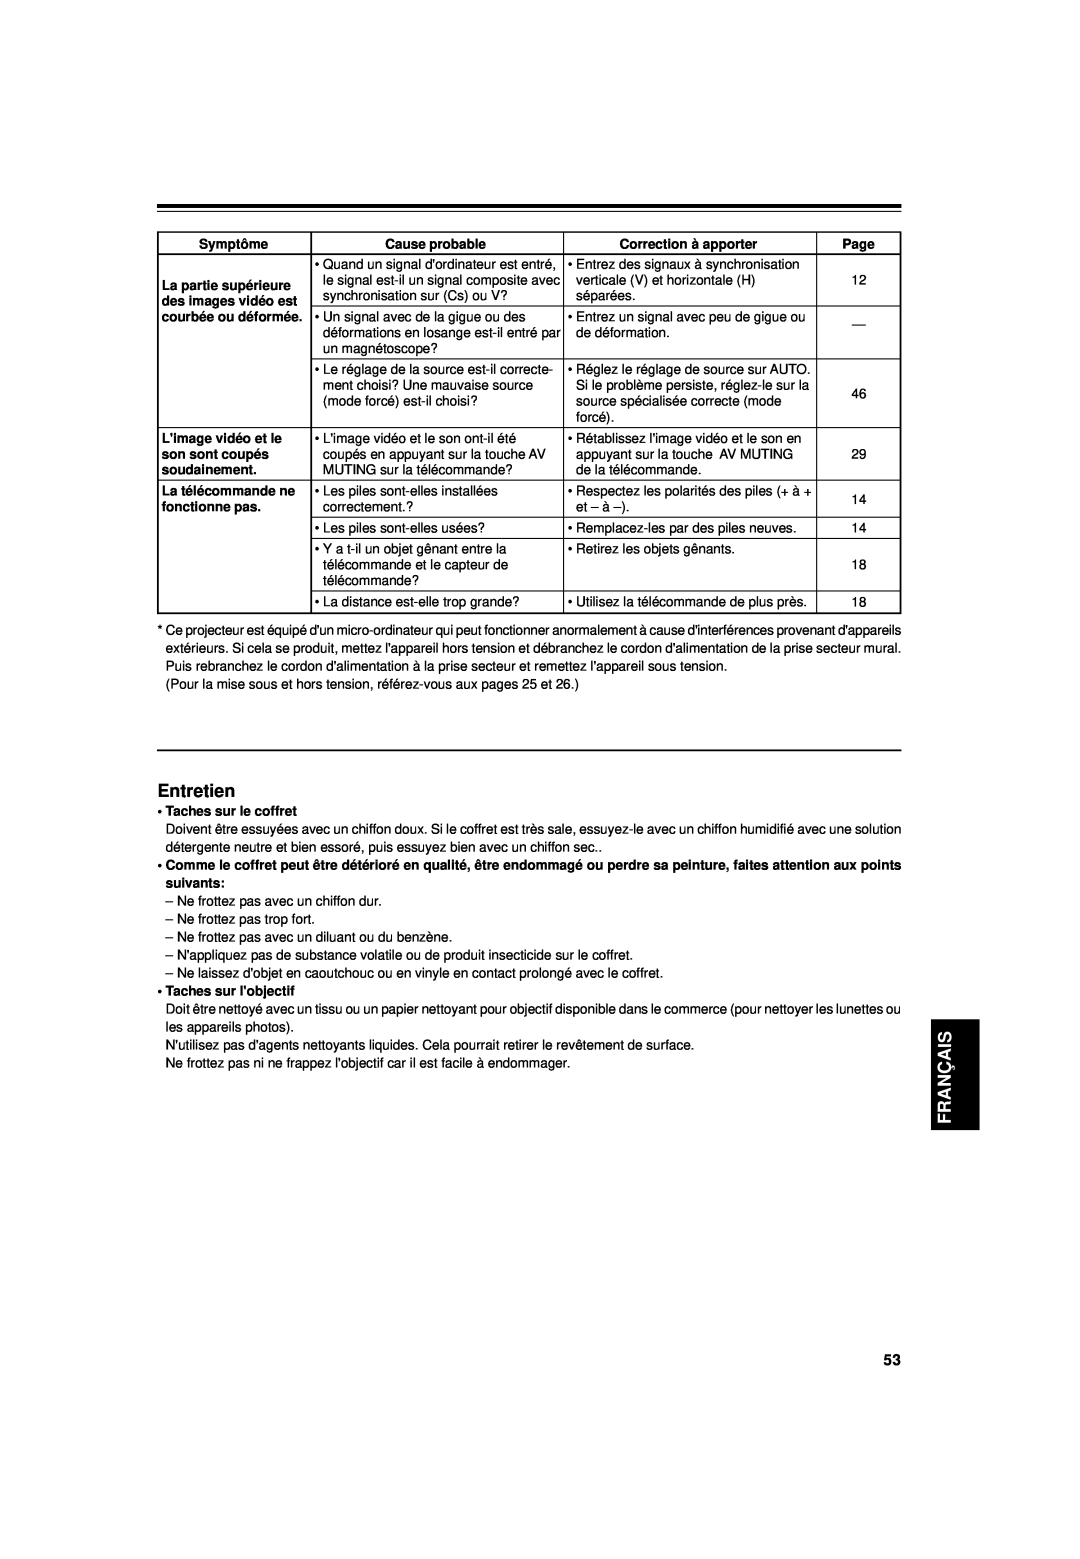 JVC DLA-G15U manual Entretien, Français, Symptôme, Cause probable, Correction à apporter, Page, La partie supérieure 